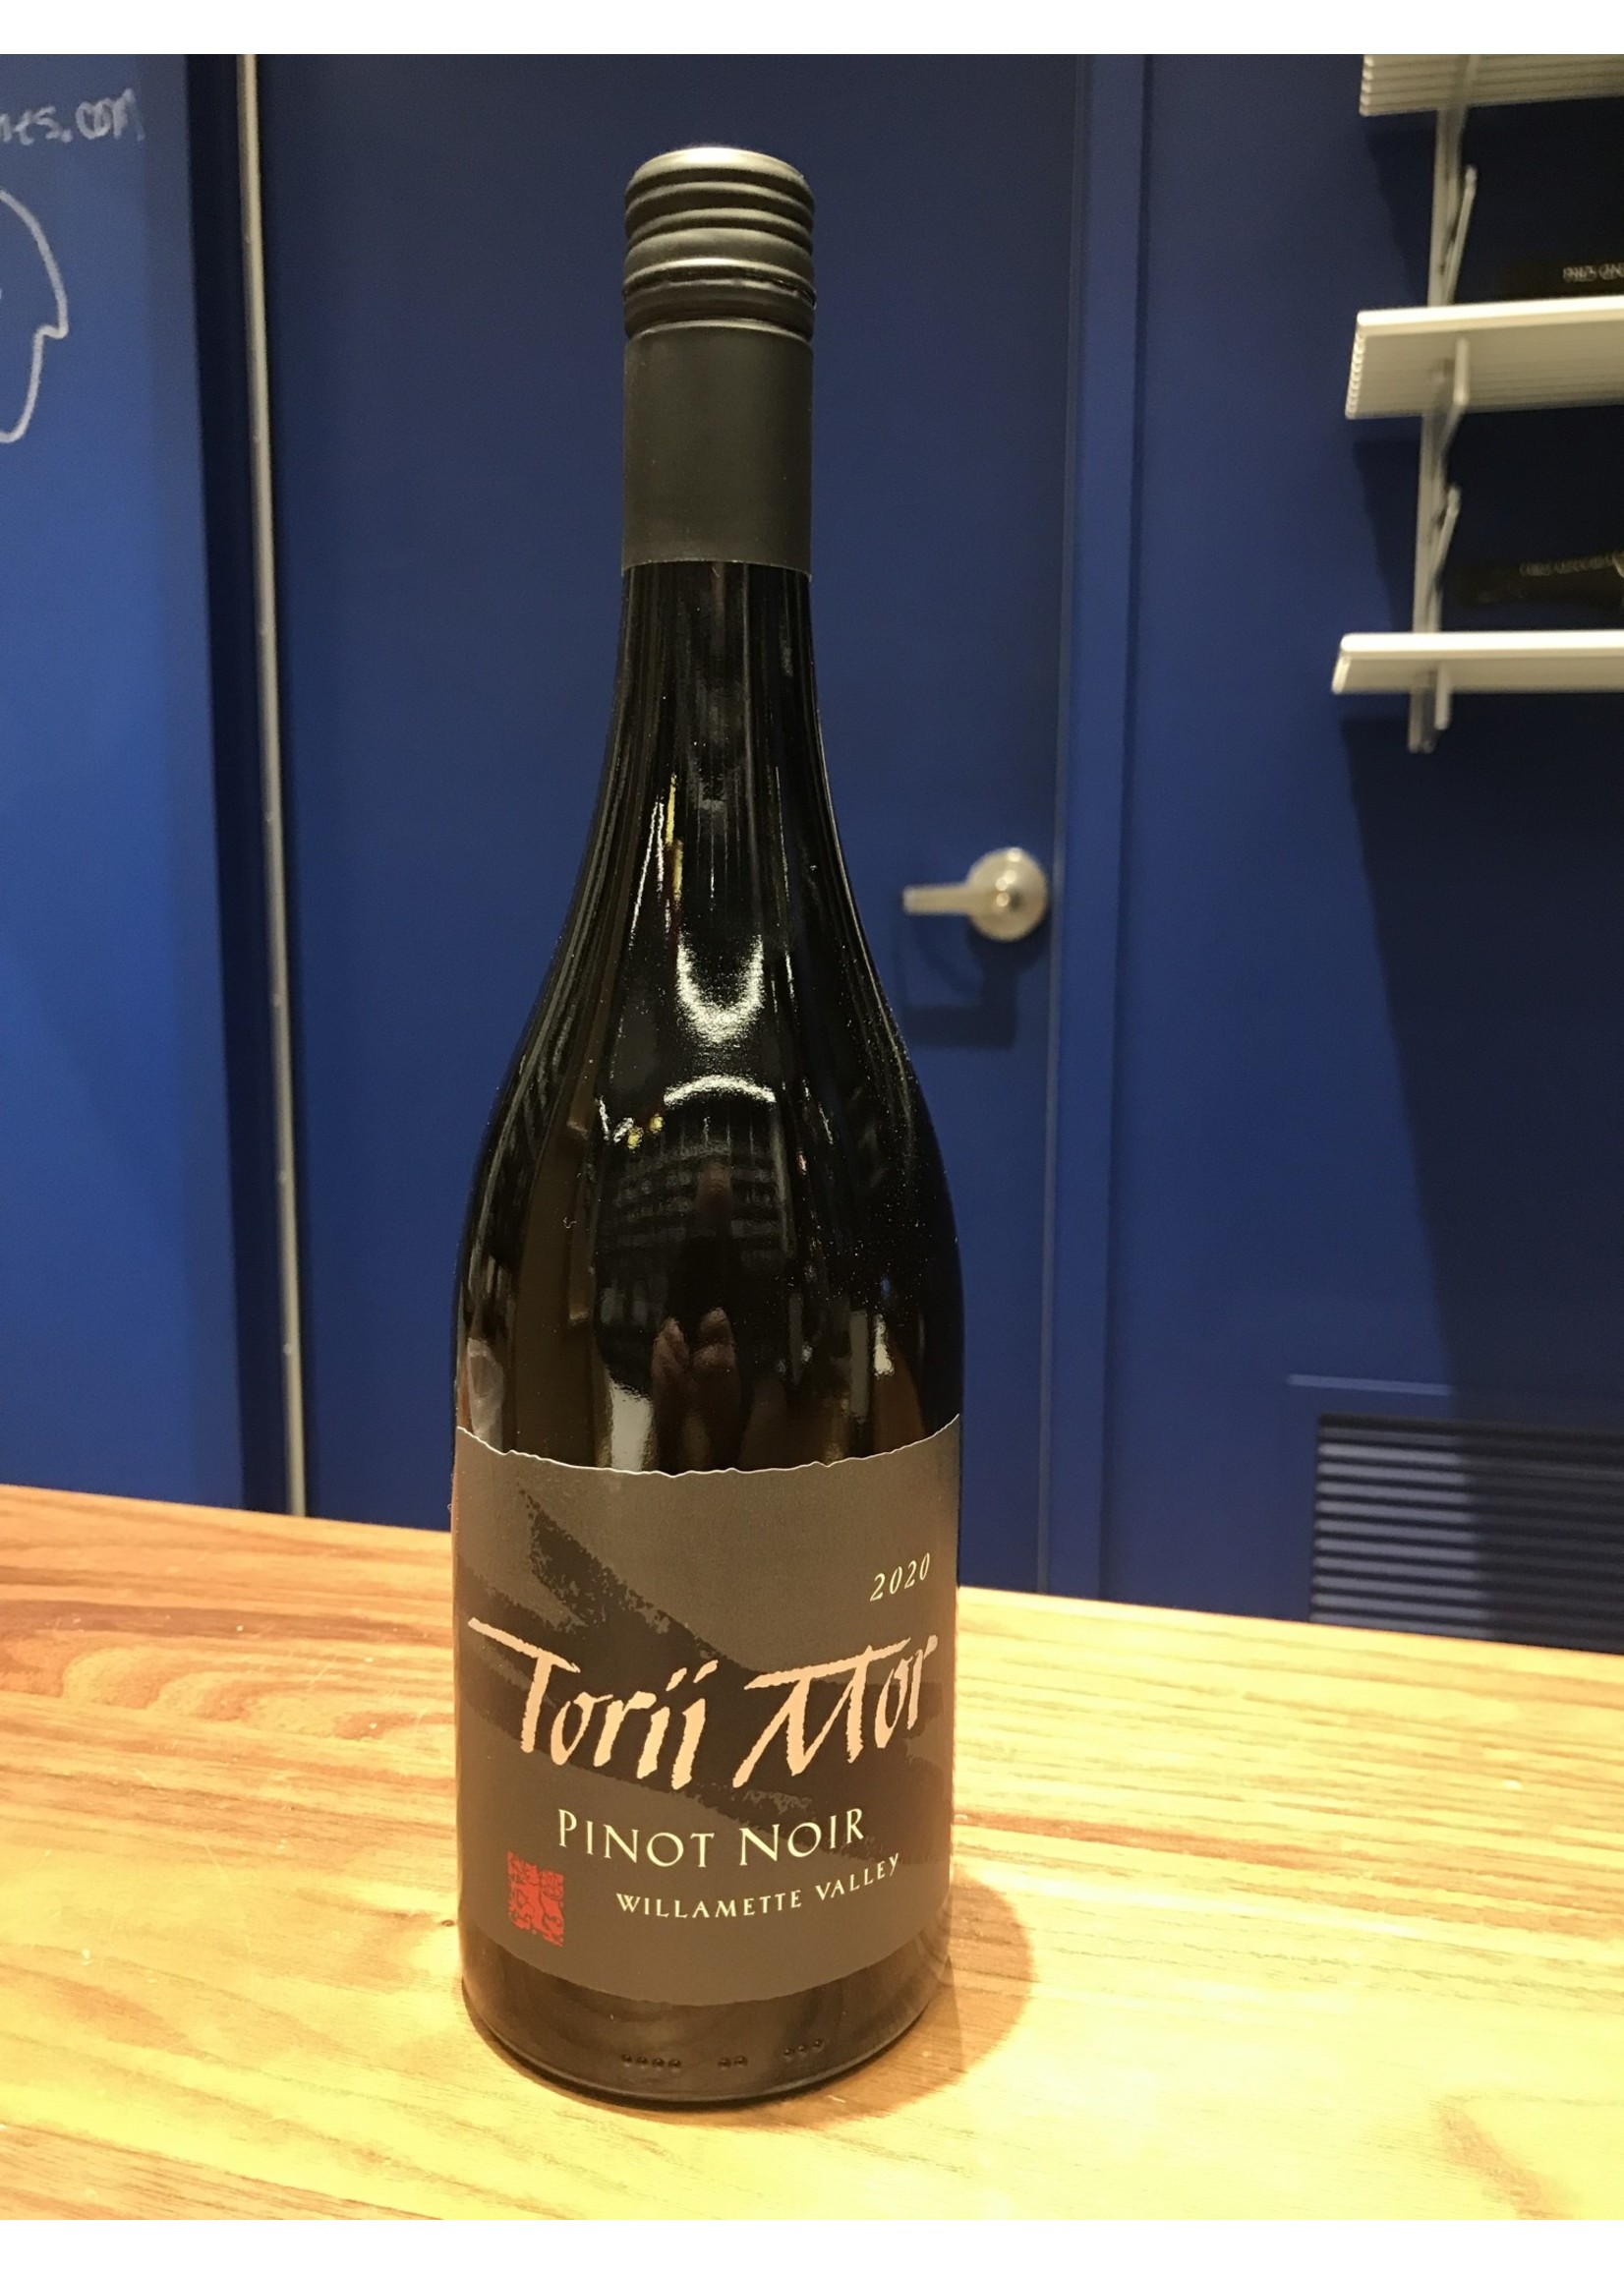 Torri Mor Torri Mor Pinot Noir Willamette Valley 2020